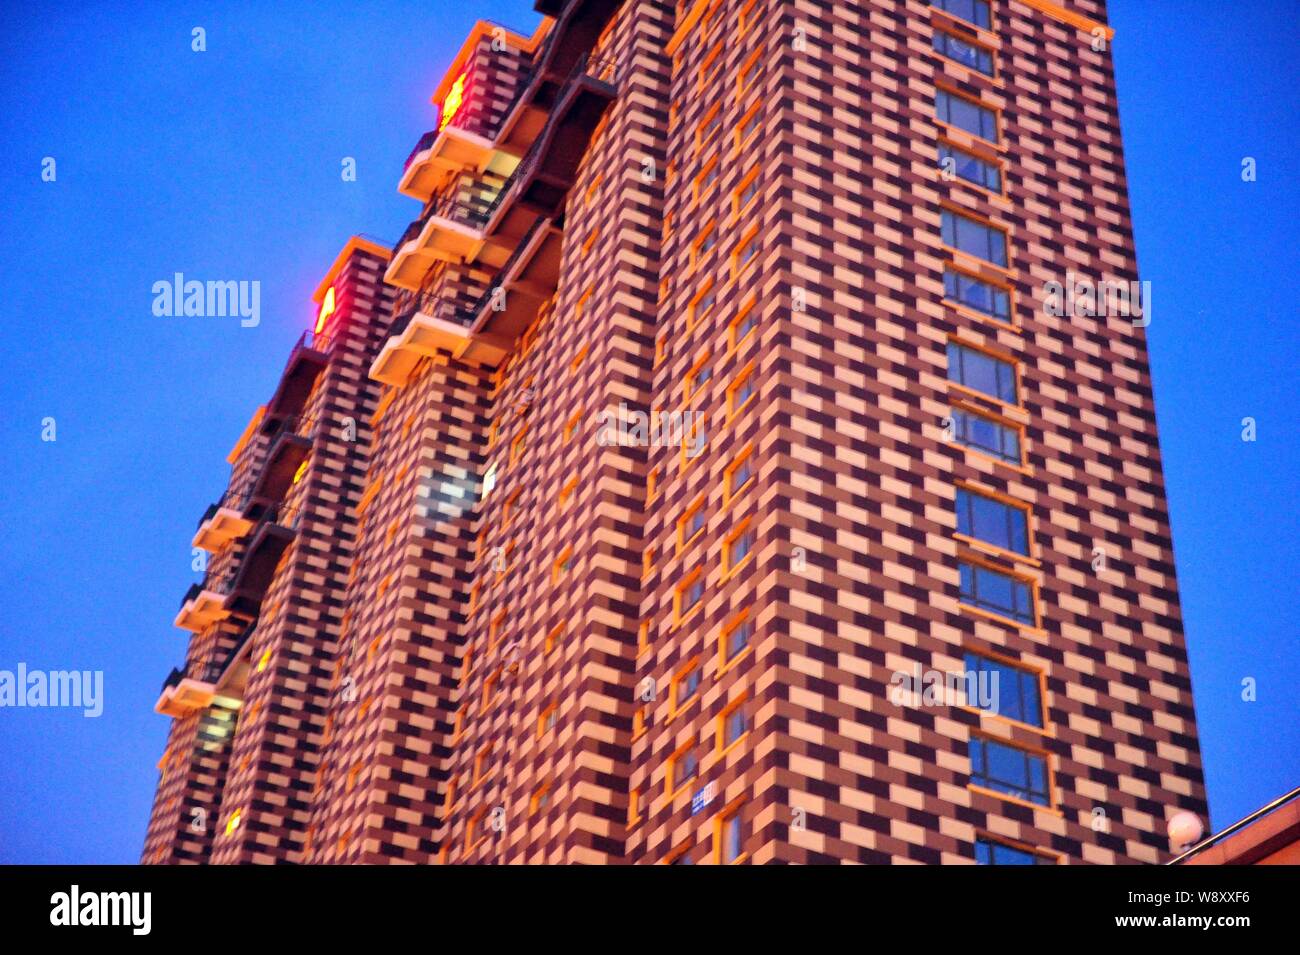 Blick auf ein hohes Gebäude mit einem überprüft Außendesign in der Stadt Shenyang, Provinz Liaoning im Nordosten Chinas, 10. April 2014. Zwei hoch - Stockfoto